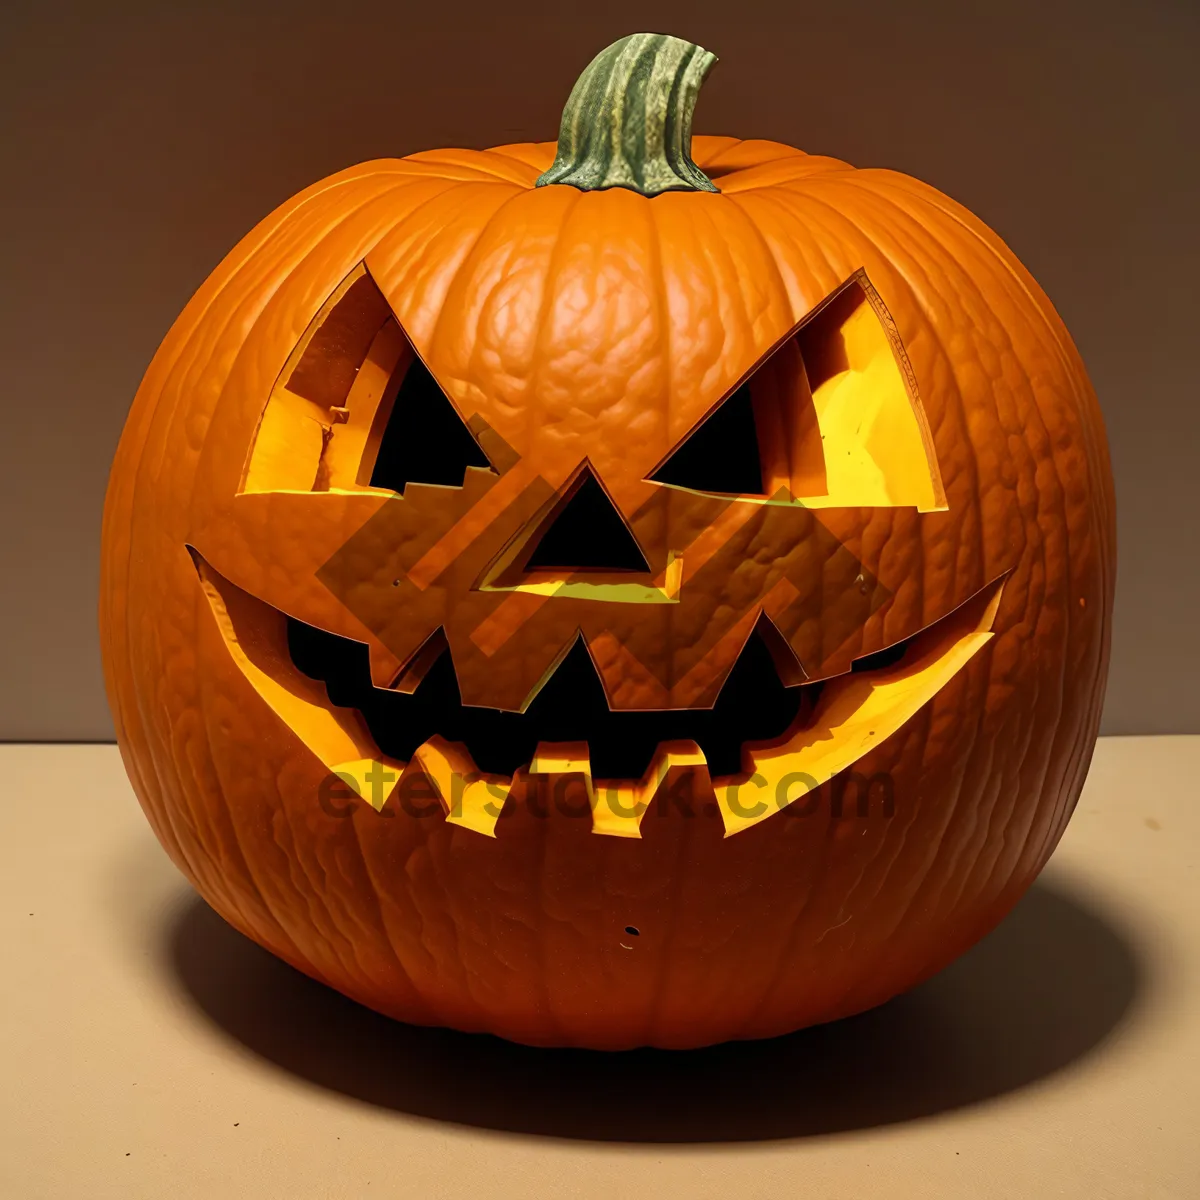 Picture of Spooky Jack-O'-Lantern Illuminates Halloween Night